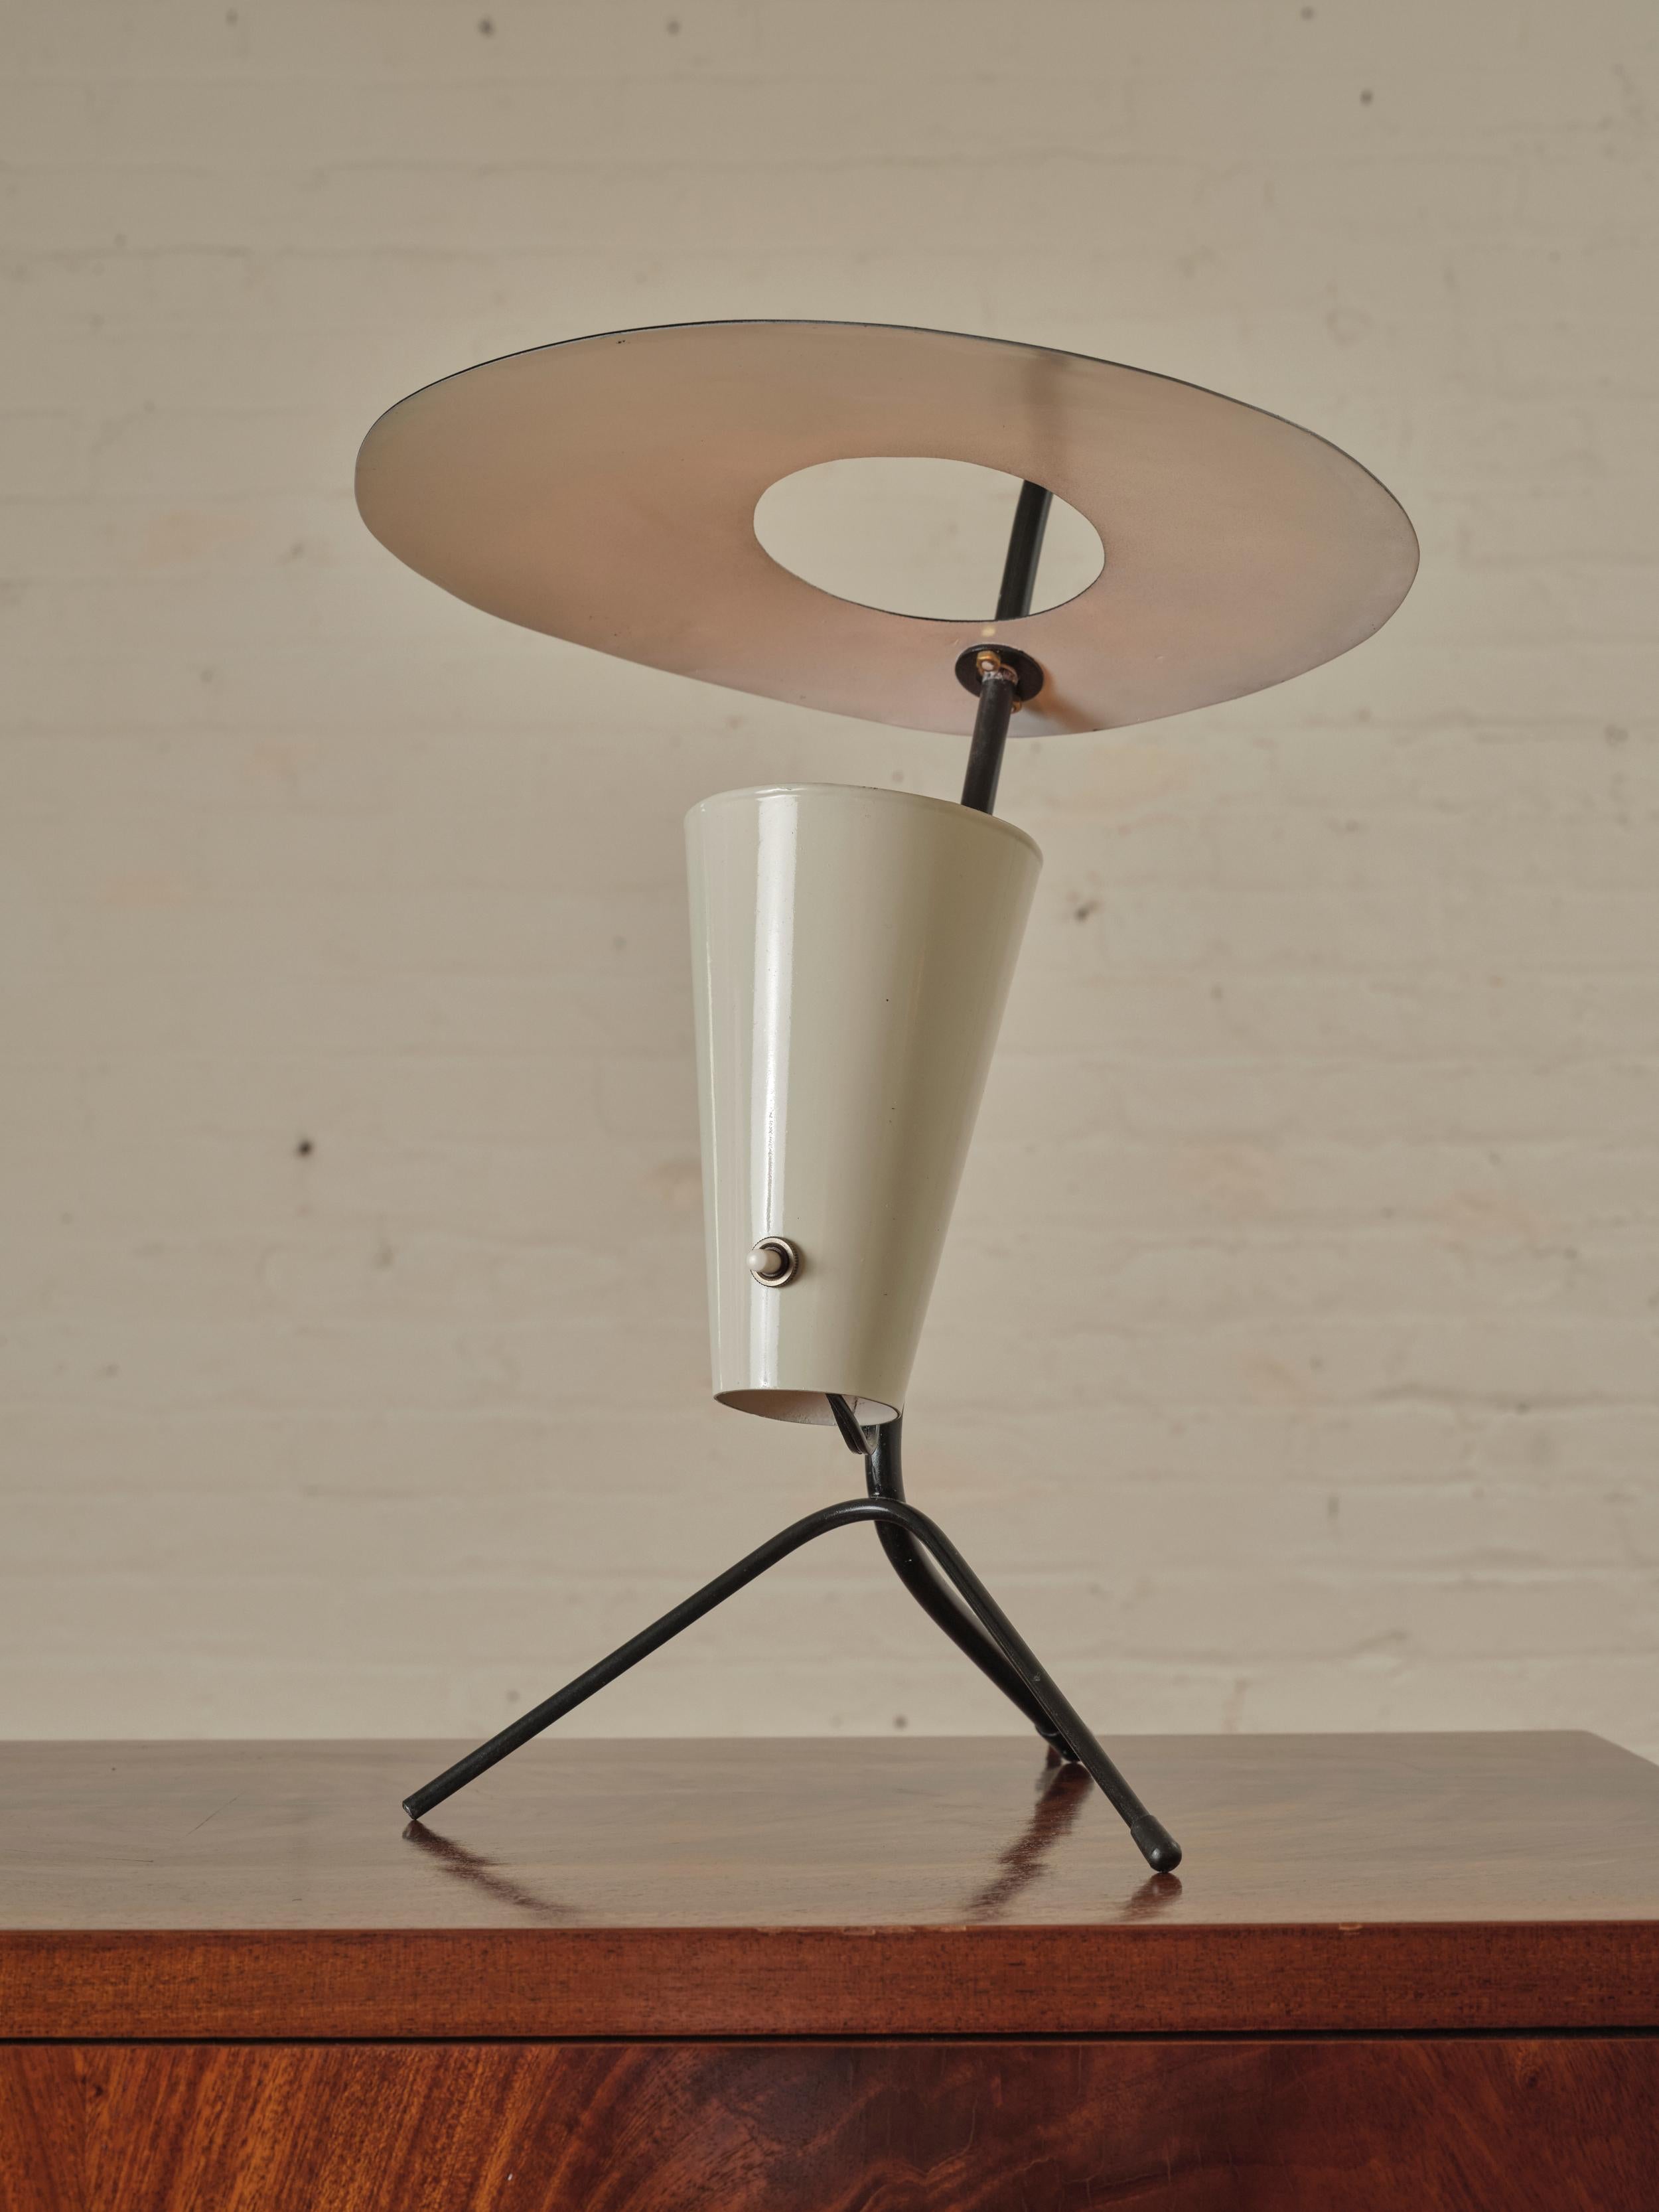 Französische Dreibein-Tischlampe, Pierre Guariche zugeschrieben. Die Leuchte wird von einem schicken emaillierten Metallscheibenschirm gekrönt, der von einem dreibeinigen Sockel getragen wird, der dem Design Stabilität und ein skulpturales Element